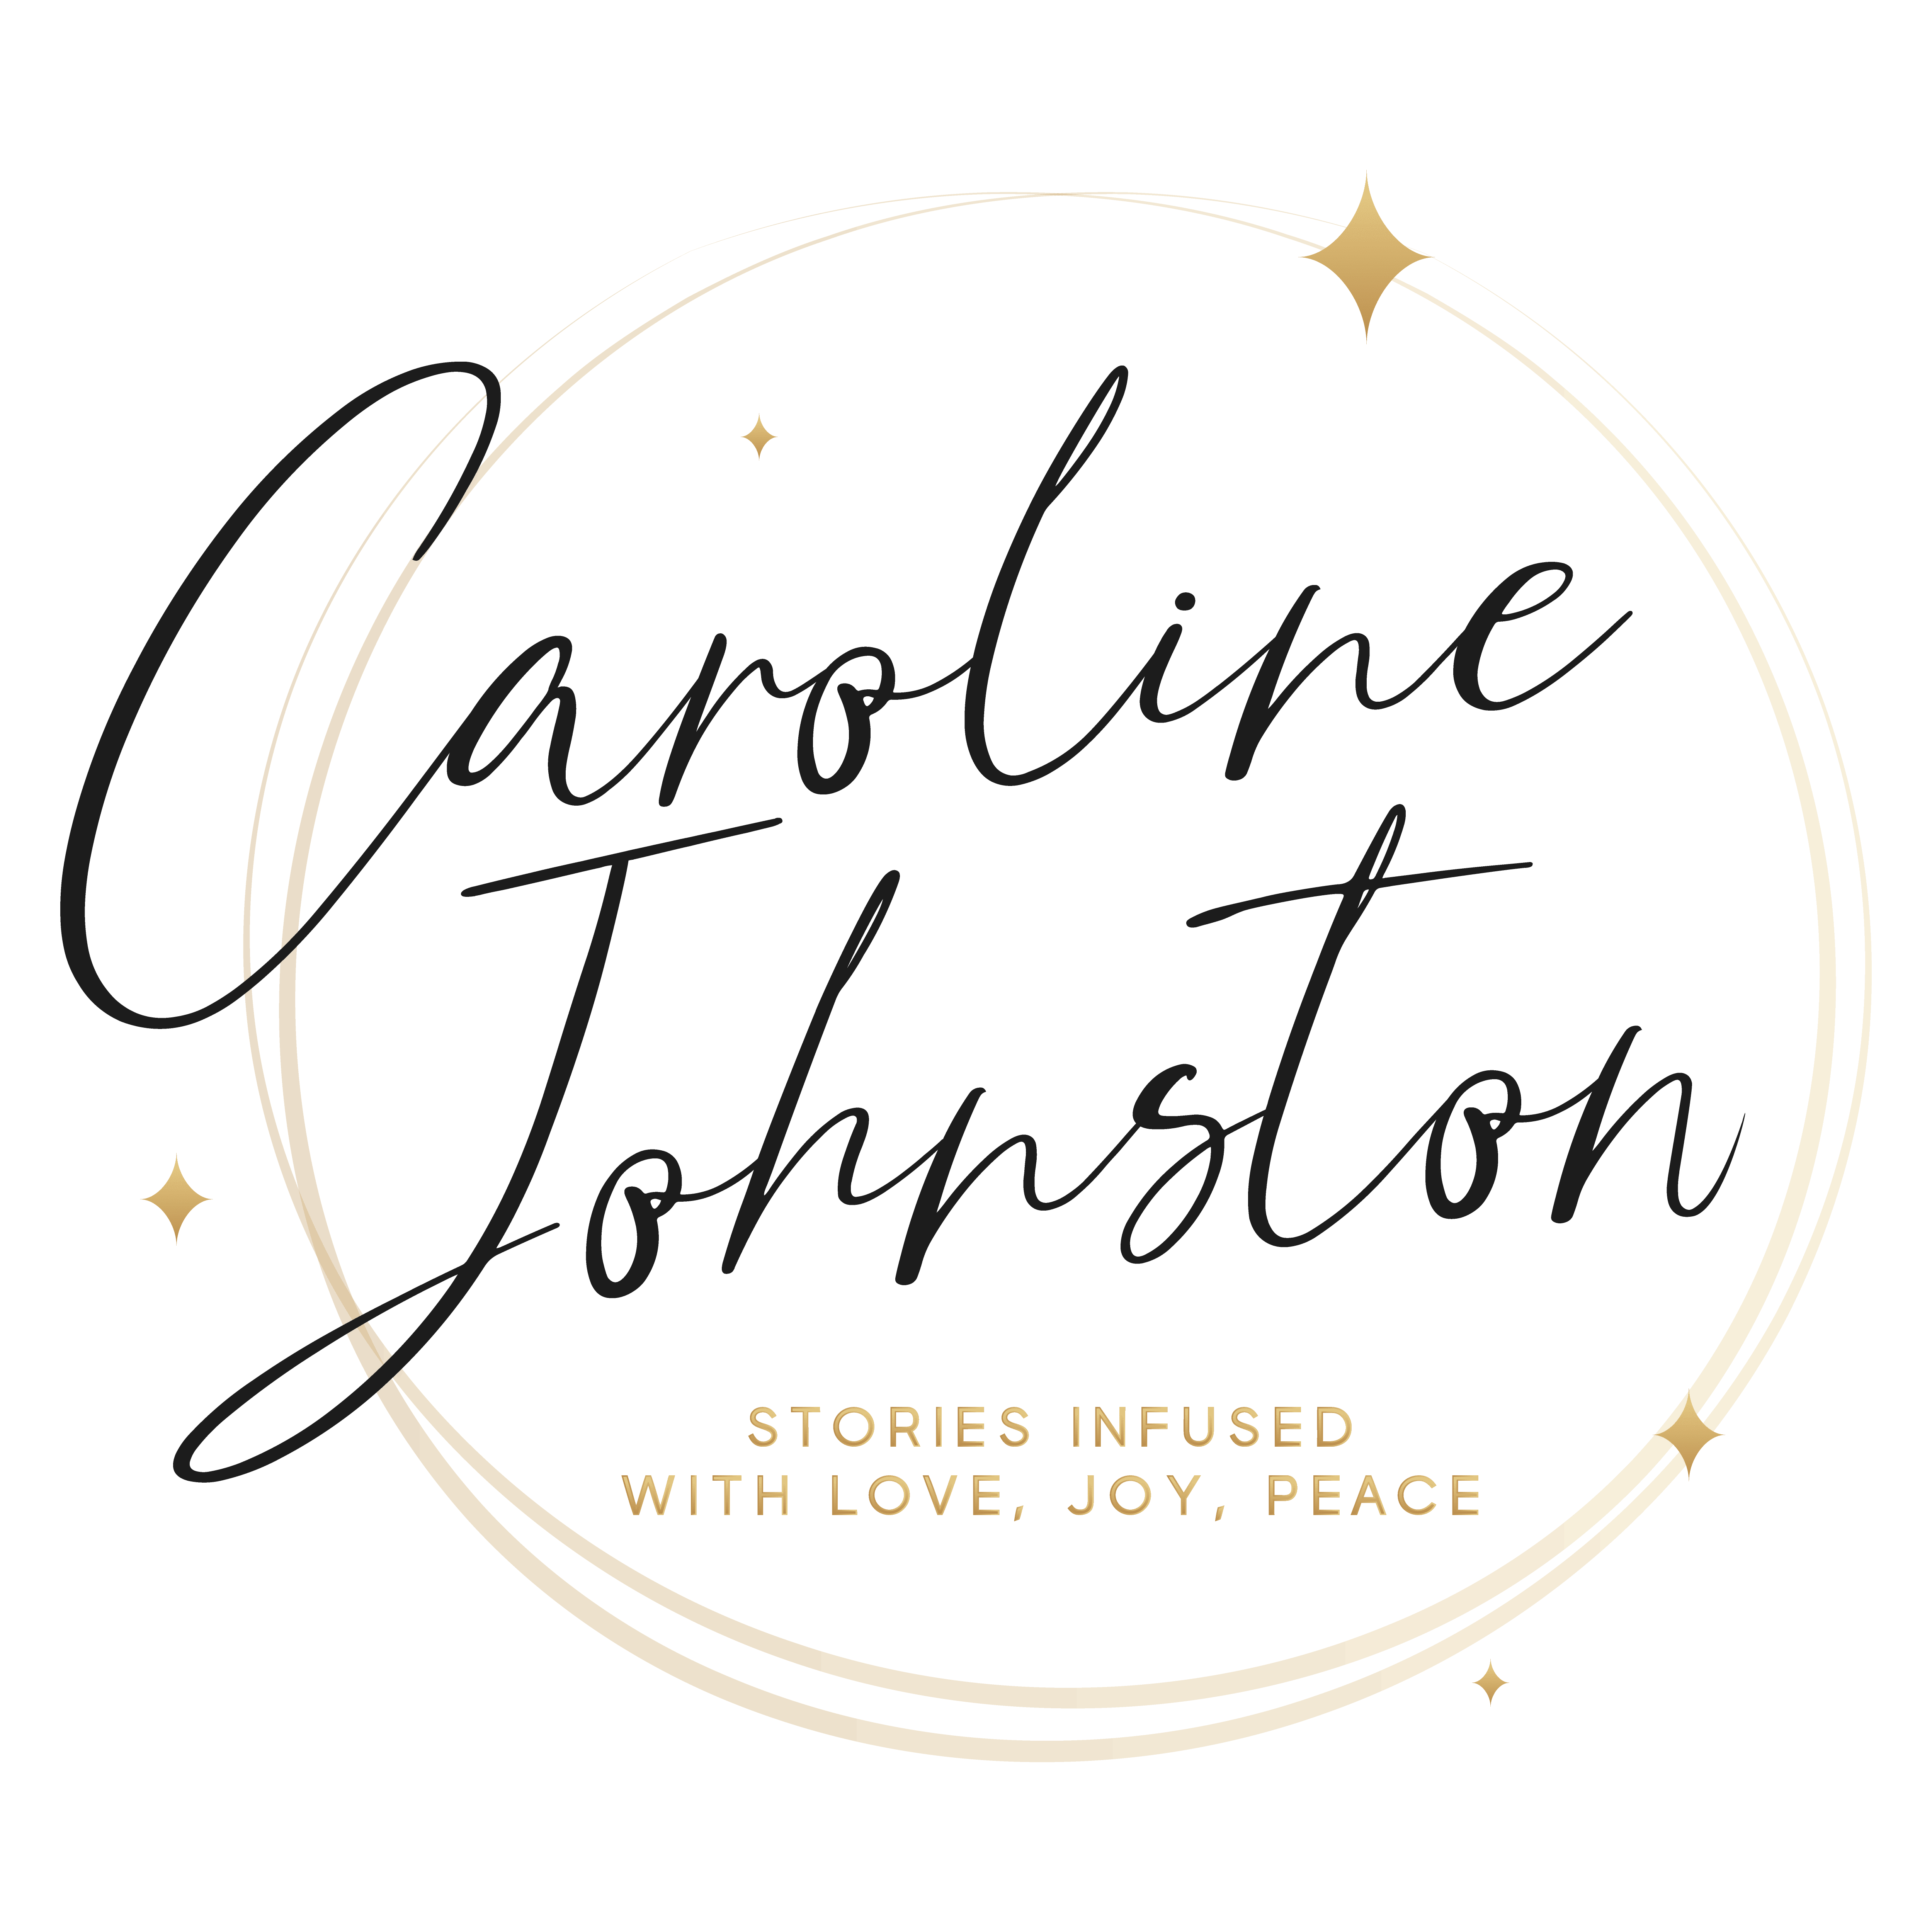 Caroline Johnston